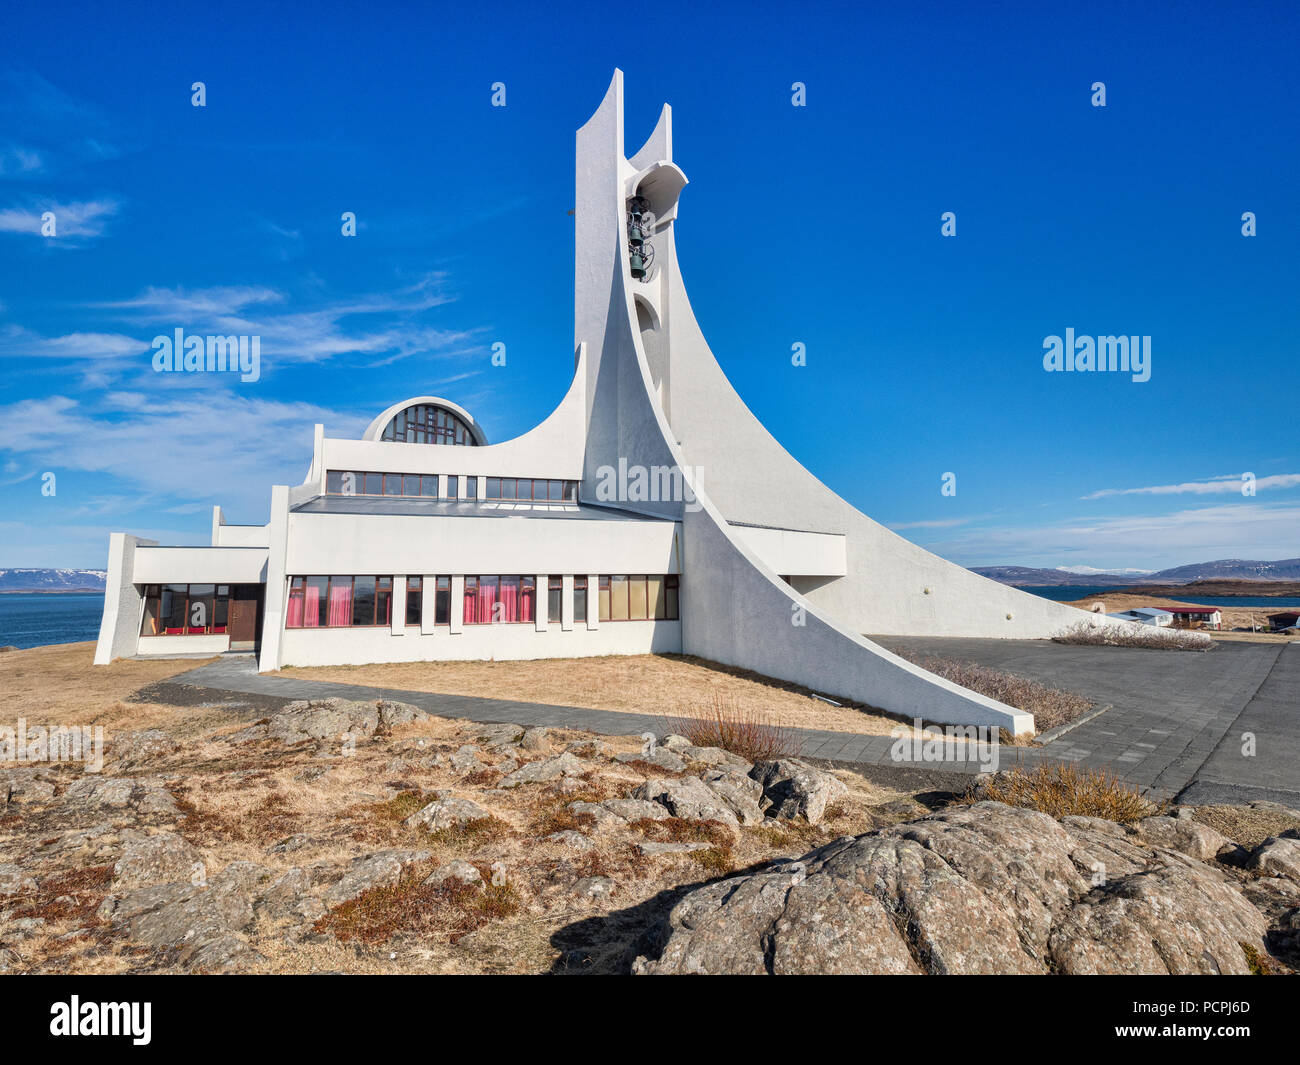 16 avril 2018 : église, Péninsule de Snaefellsness Keflavik, Islande de l'Ouest - Une église qui est aussi utilisé comme salle de concert. Banque D'Images